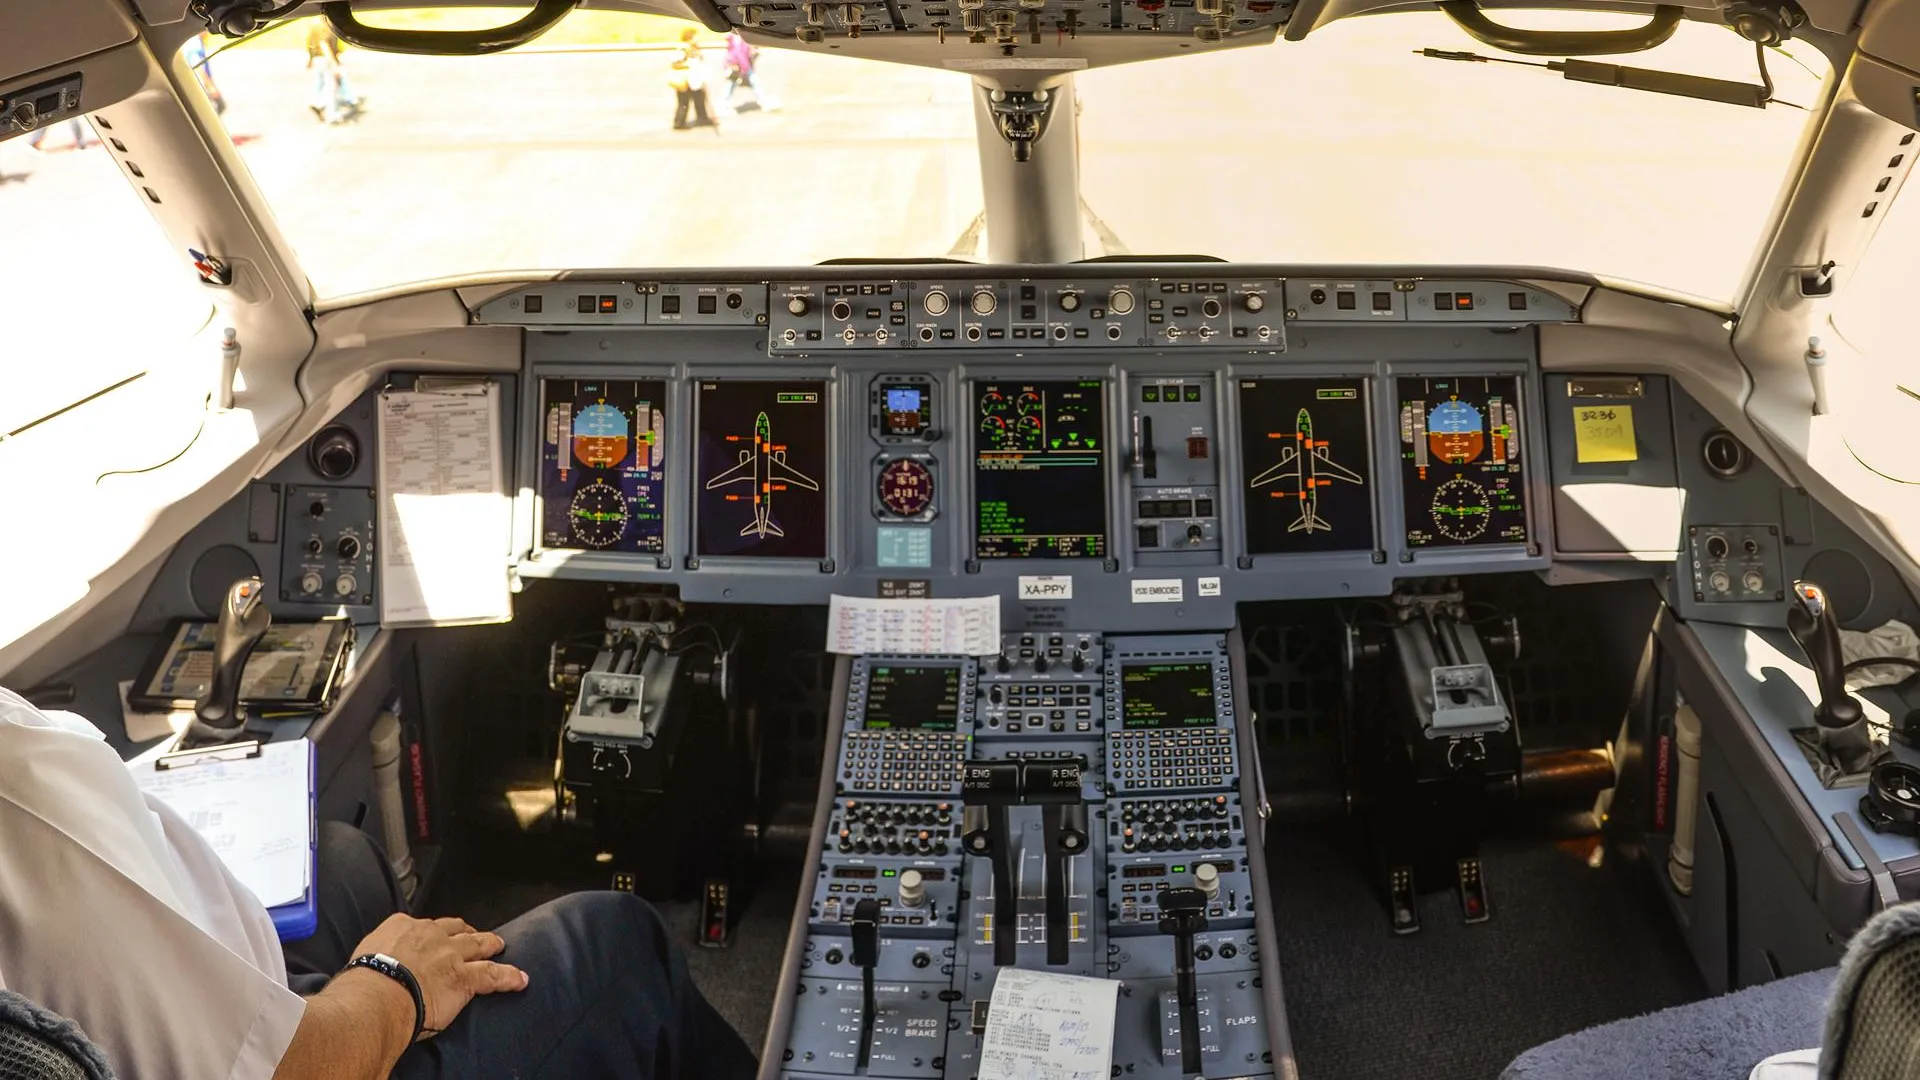 Baza: Sukhoi Superjet 100 перед падением в Подмосковье подал сигнал бедствия